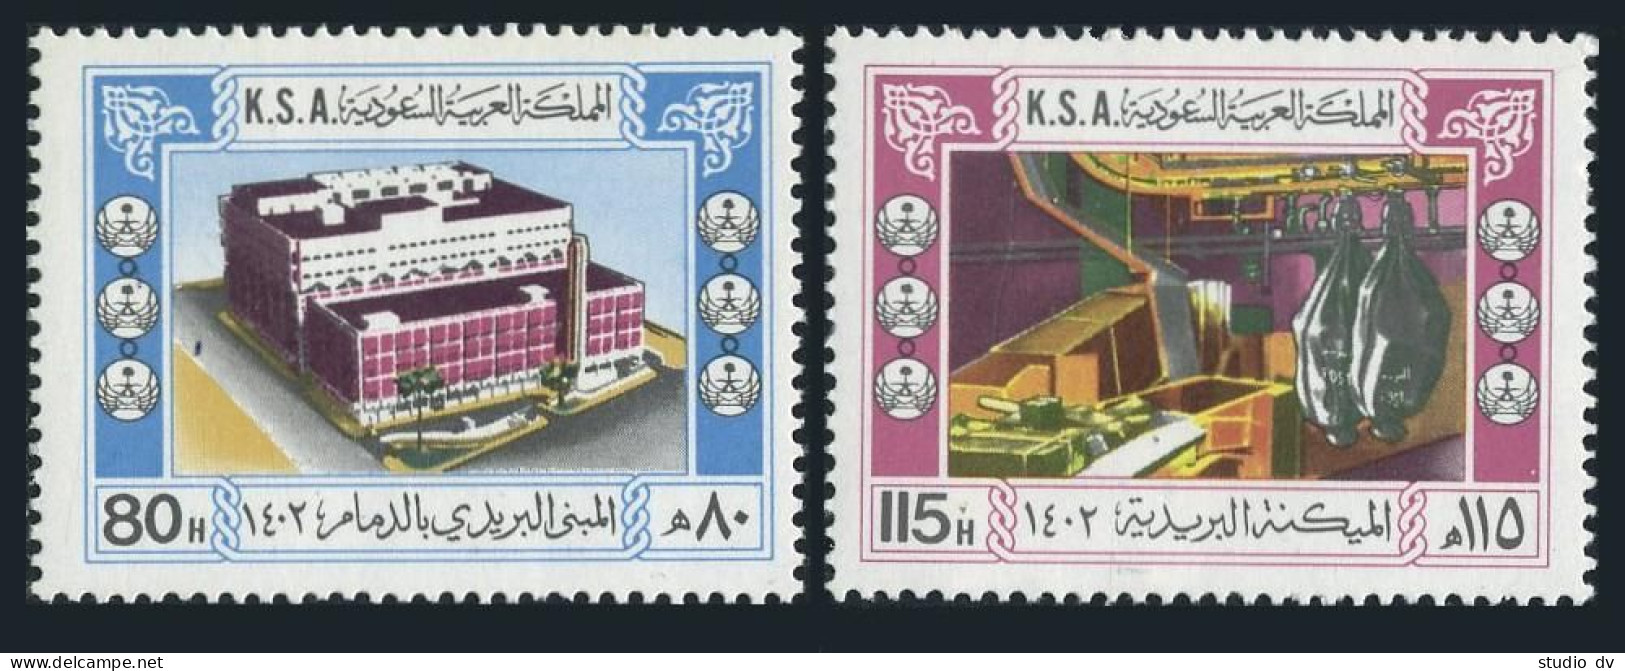 Saudi Arabia 843-844, MNH. Michel 749-750. New Regional Postal Centers, 1982. - Saudi Arabia